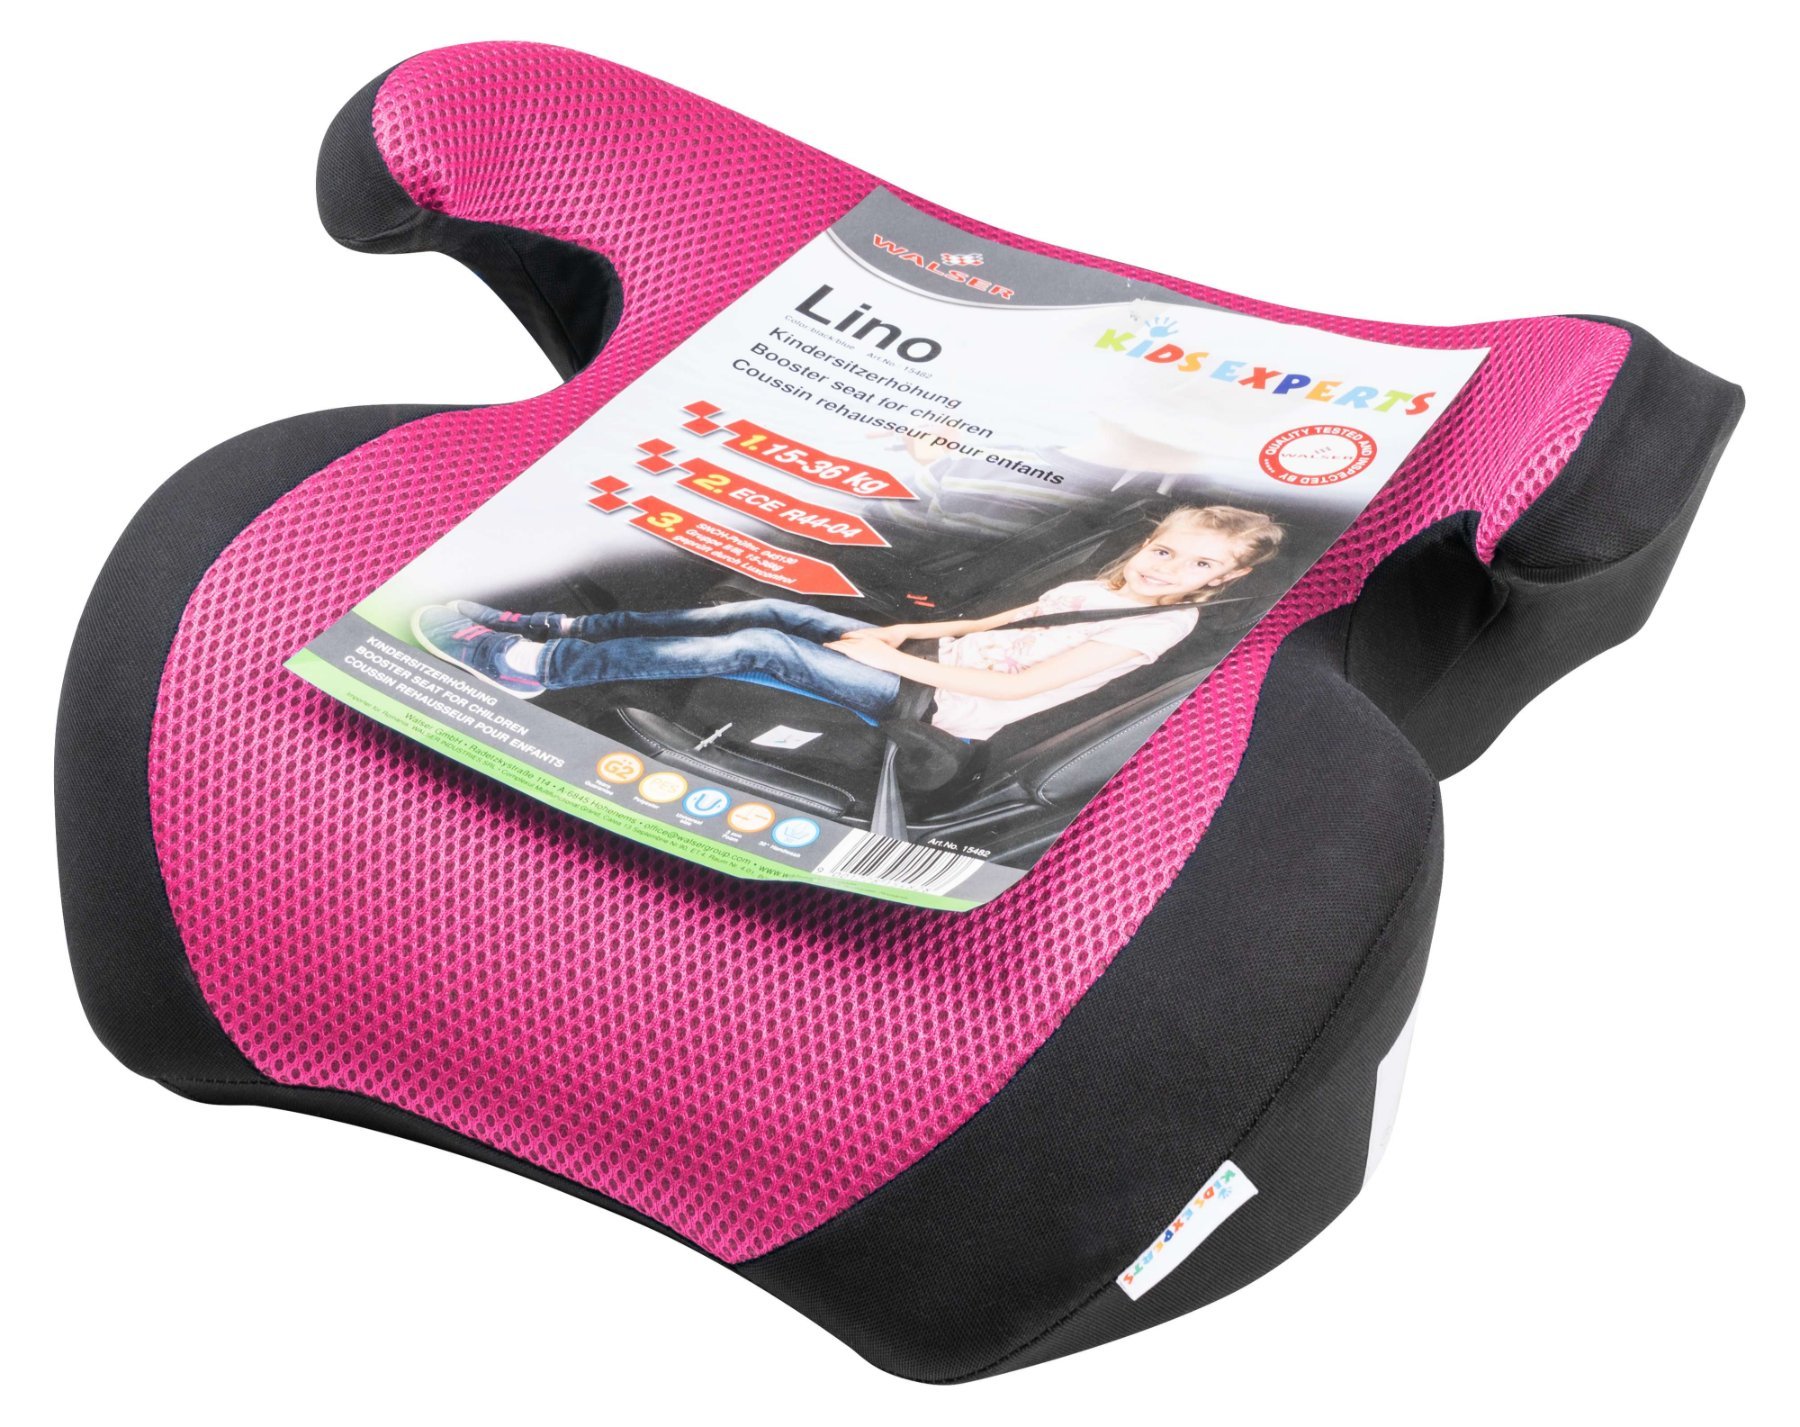 Kindersitzerhöhung Lino, Auto-Kindersitz ECE 44/04 geprüft schwarz/rosa